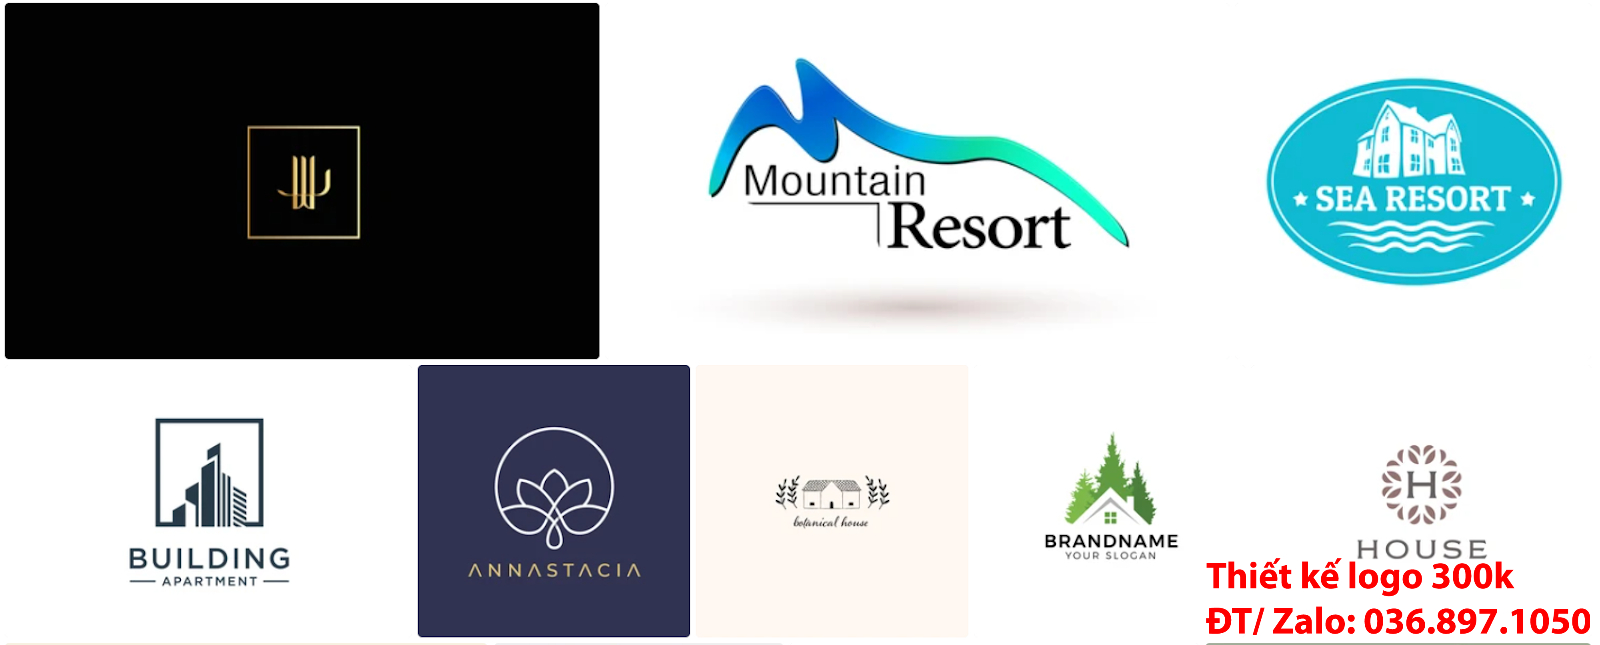 Công ty có nhận làm Mẫu thiết kế Logo khách sạn resort nhà nghỉ đẹp nhất hiện nay giá rẻ từ 300k đến 500k